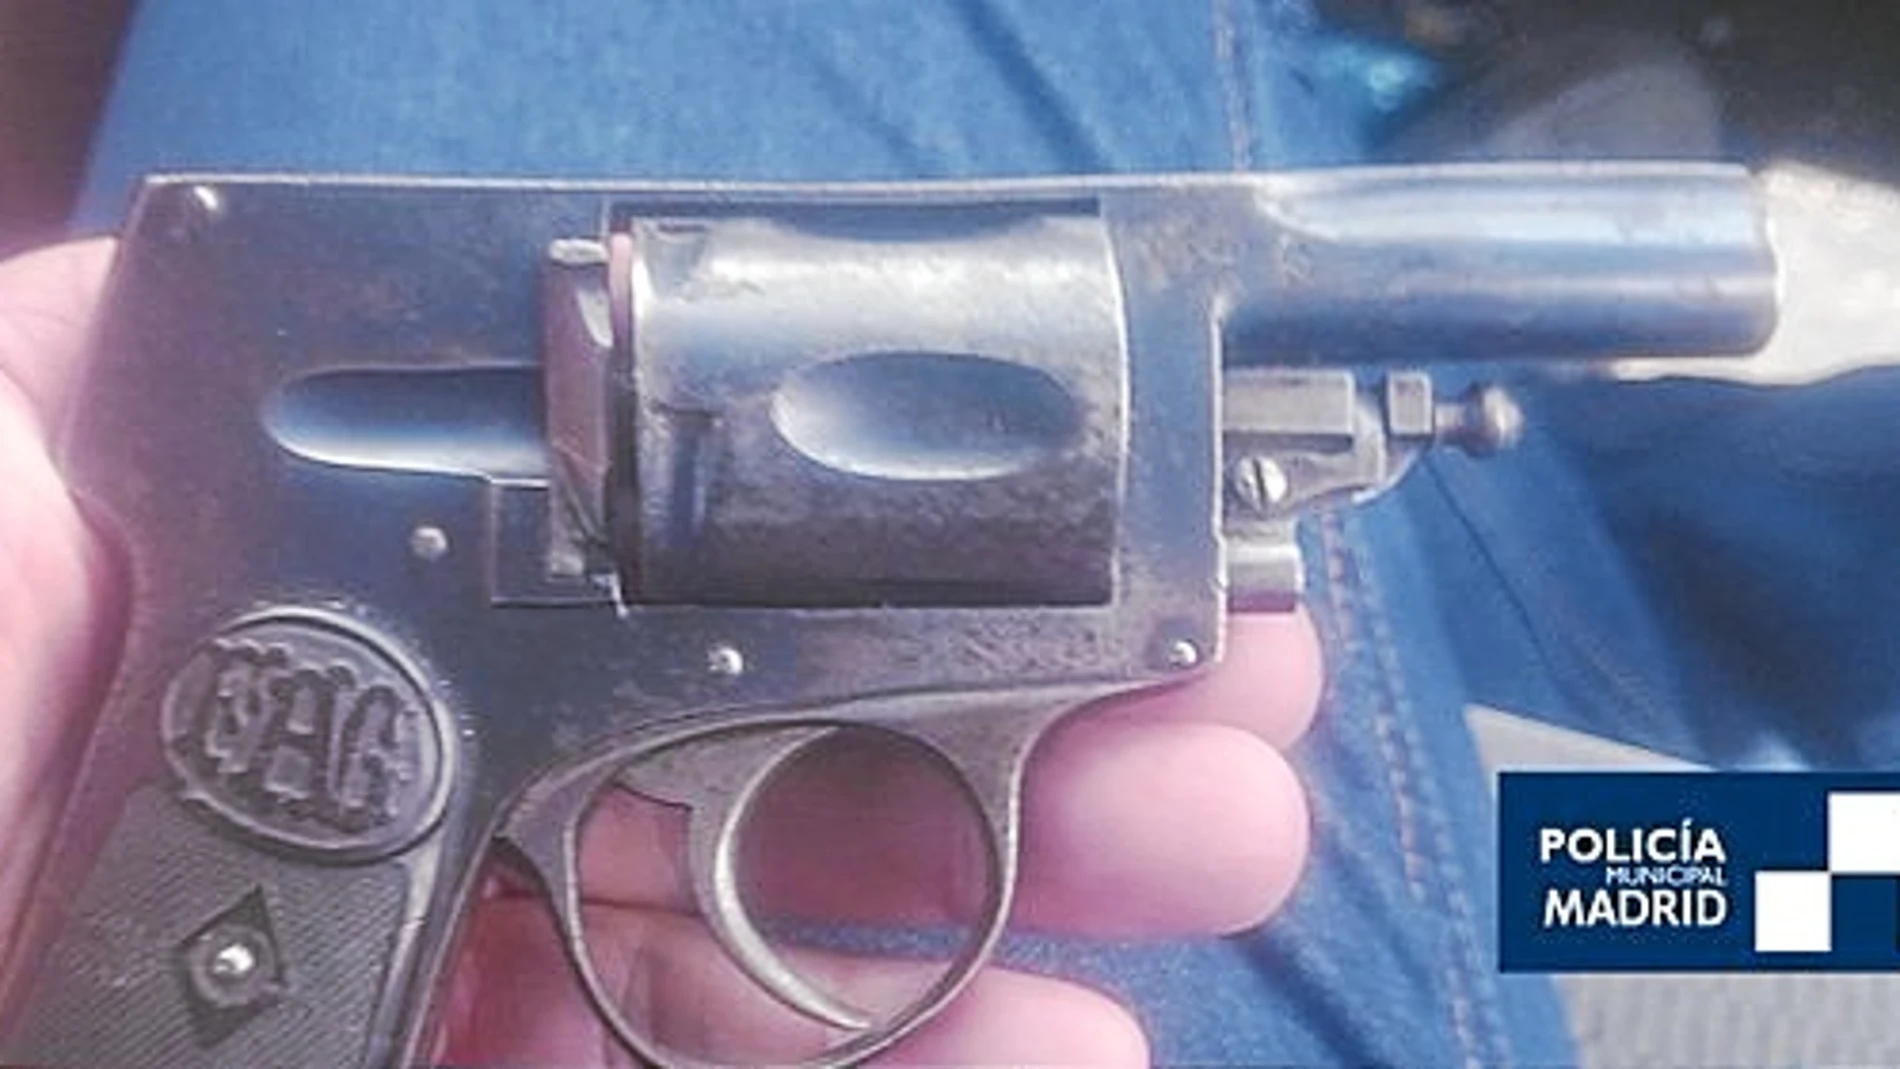 Los agentes de Latina encontraron un revólver y una pistola de calibre 32 y 9, respectivamente